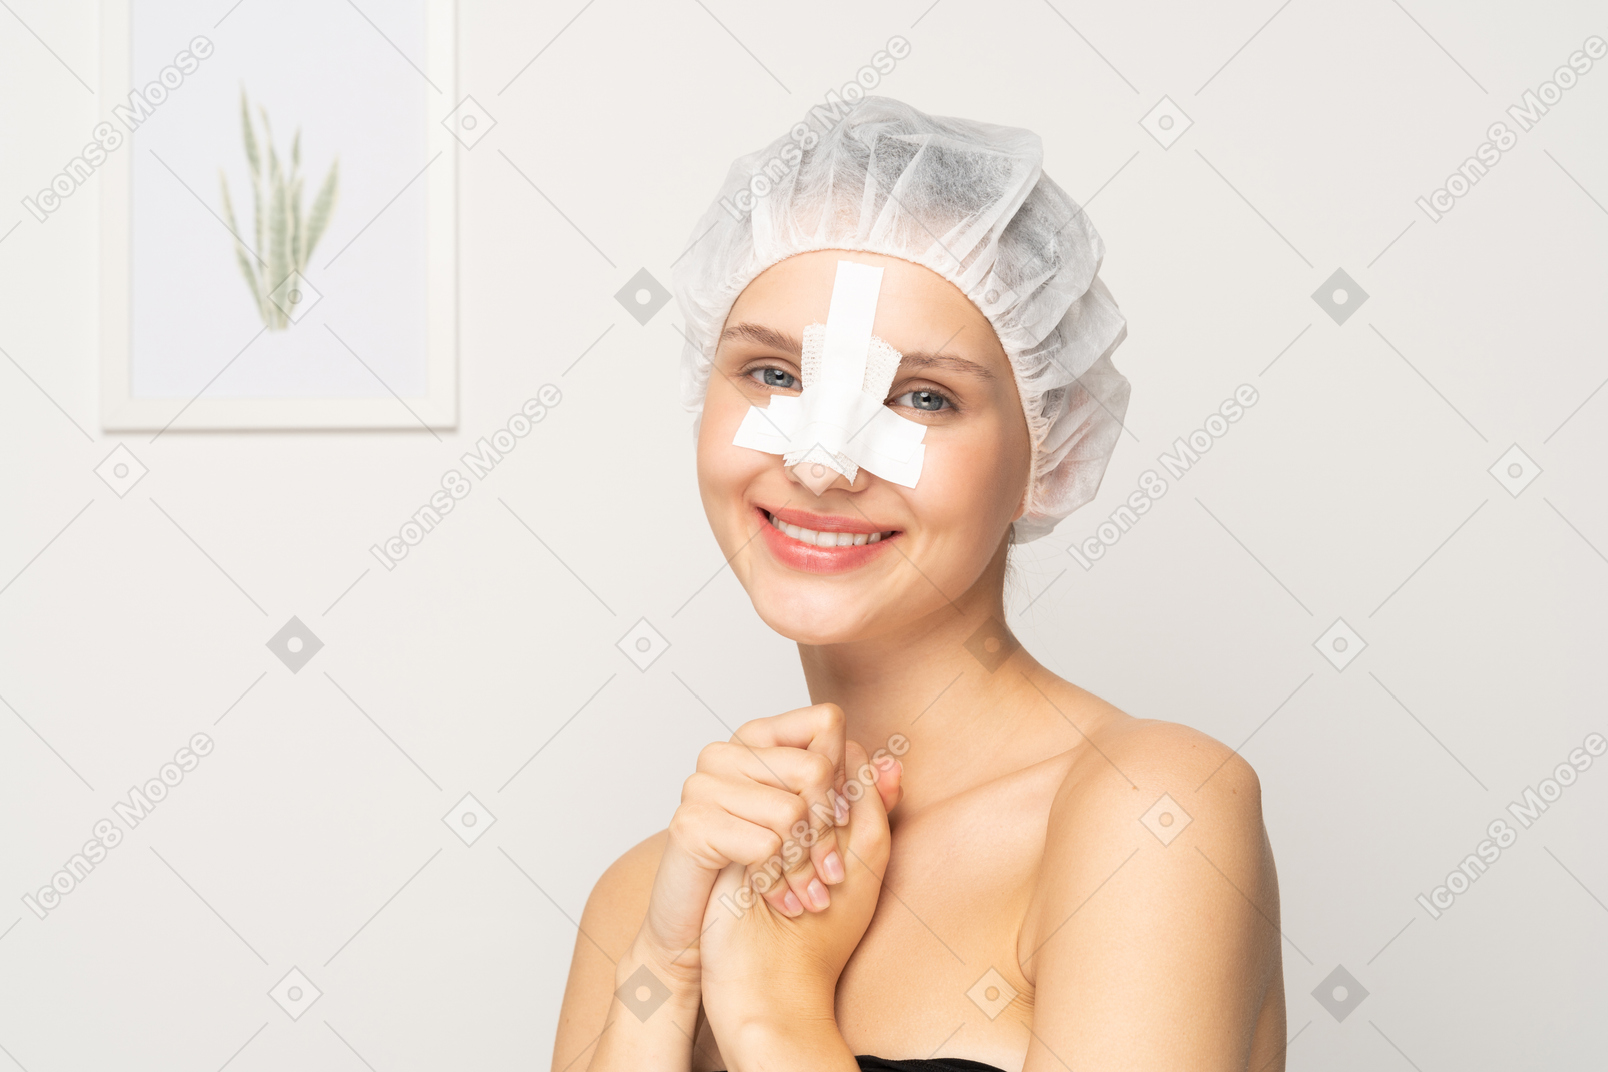 Paciente do sexo feminino sorridente com nariz enfaixado